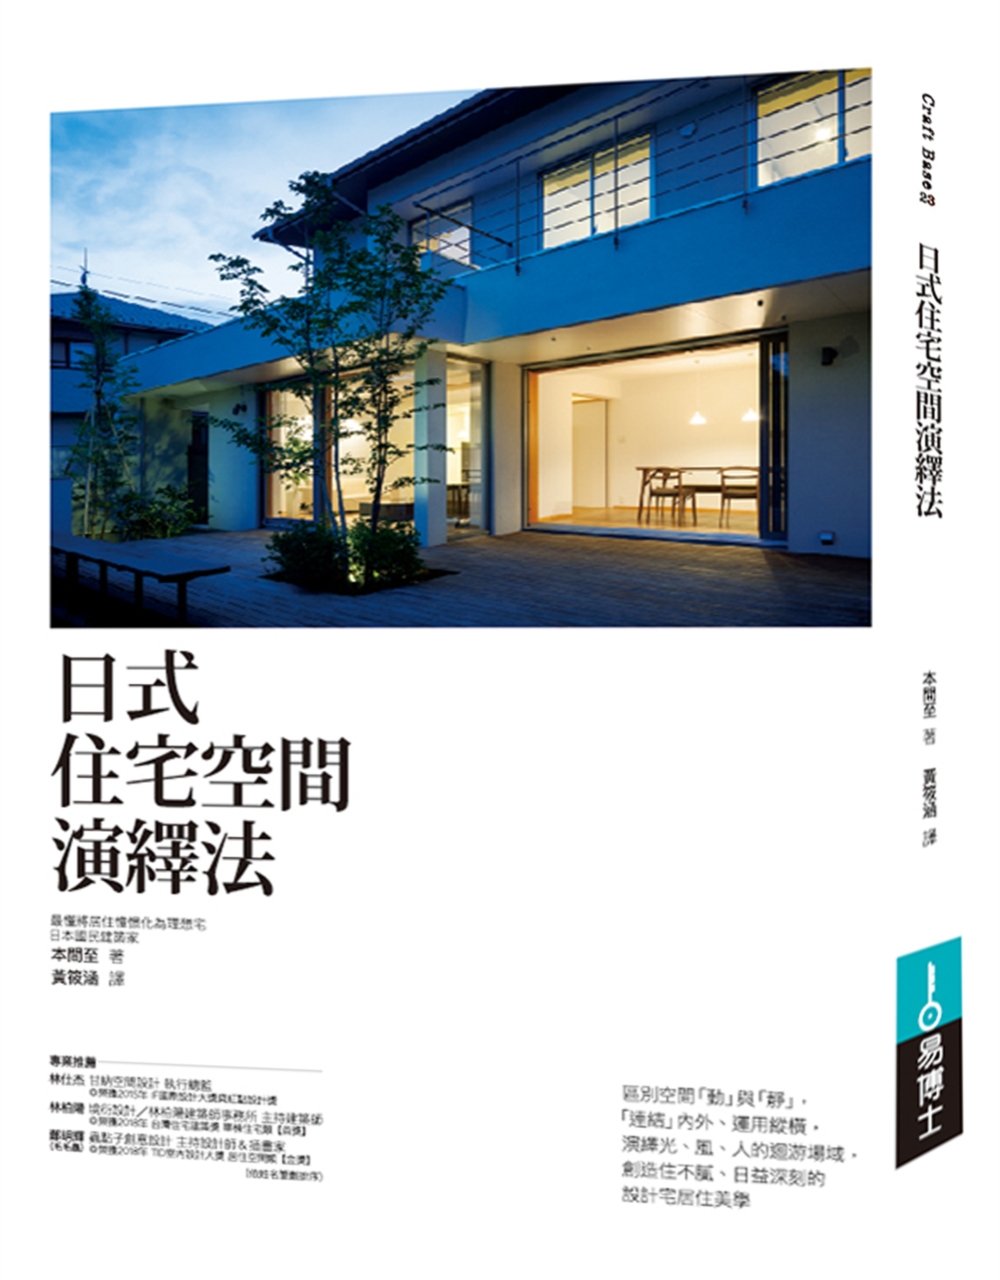 日式住宅空間演繹法